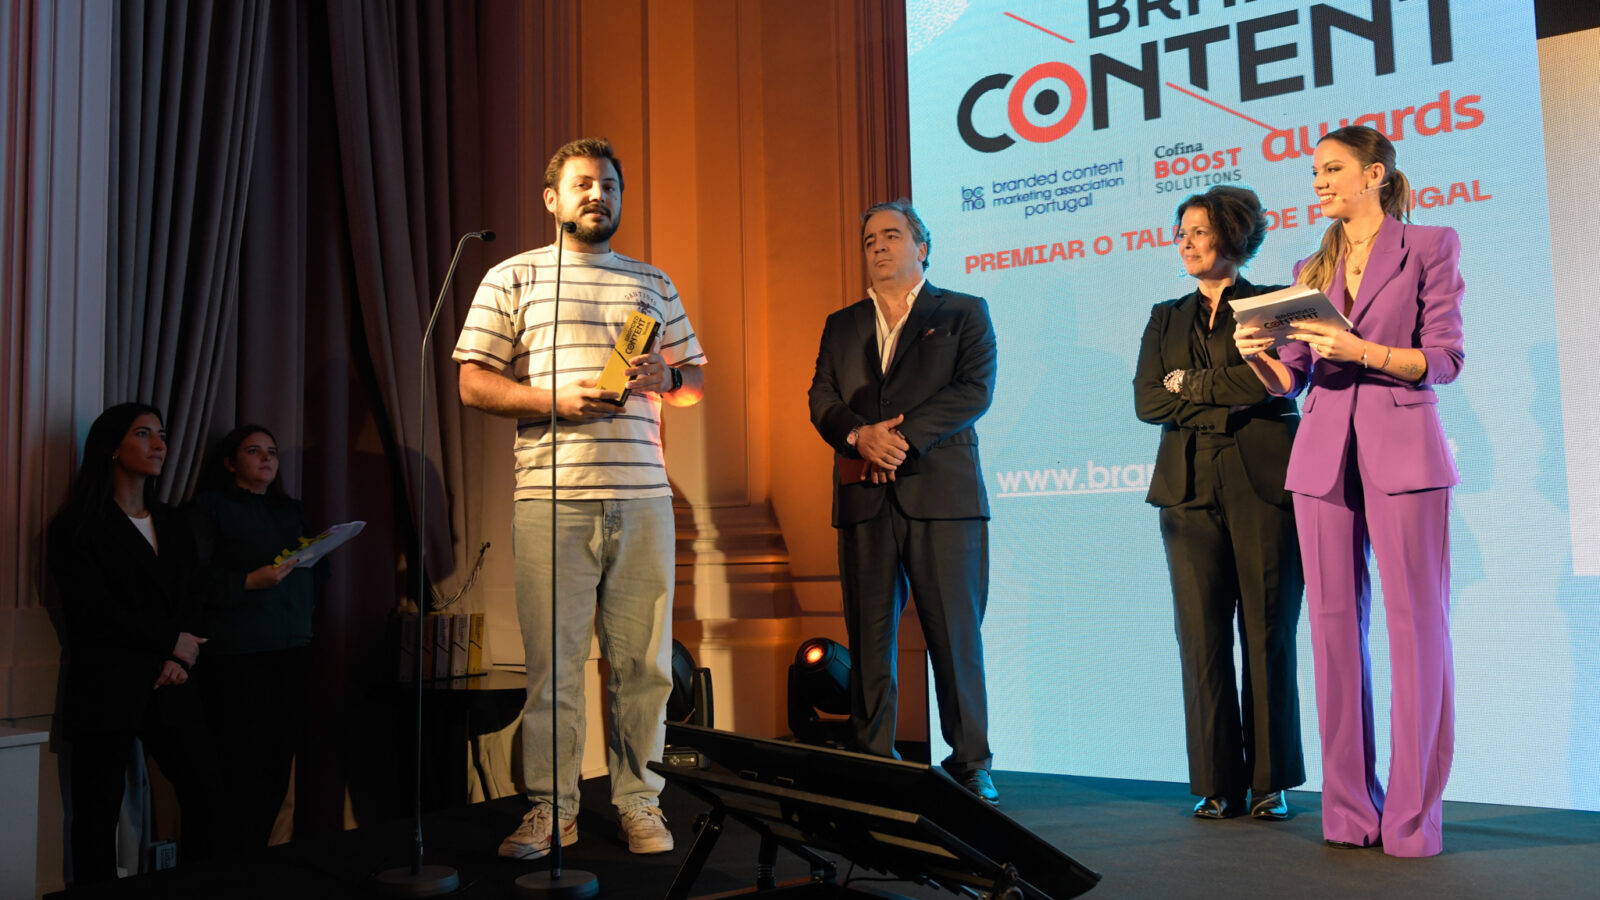 O estrategista Manuel Corte-Real, da Dentsu Creative, agradeceu o prémio em nome de todos os colegas